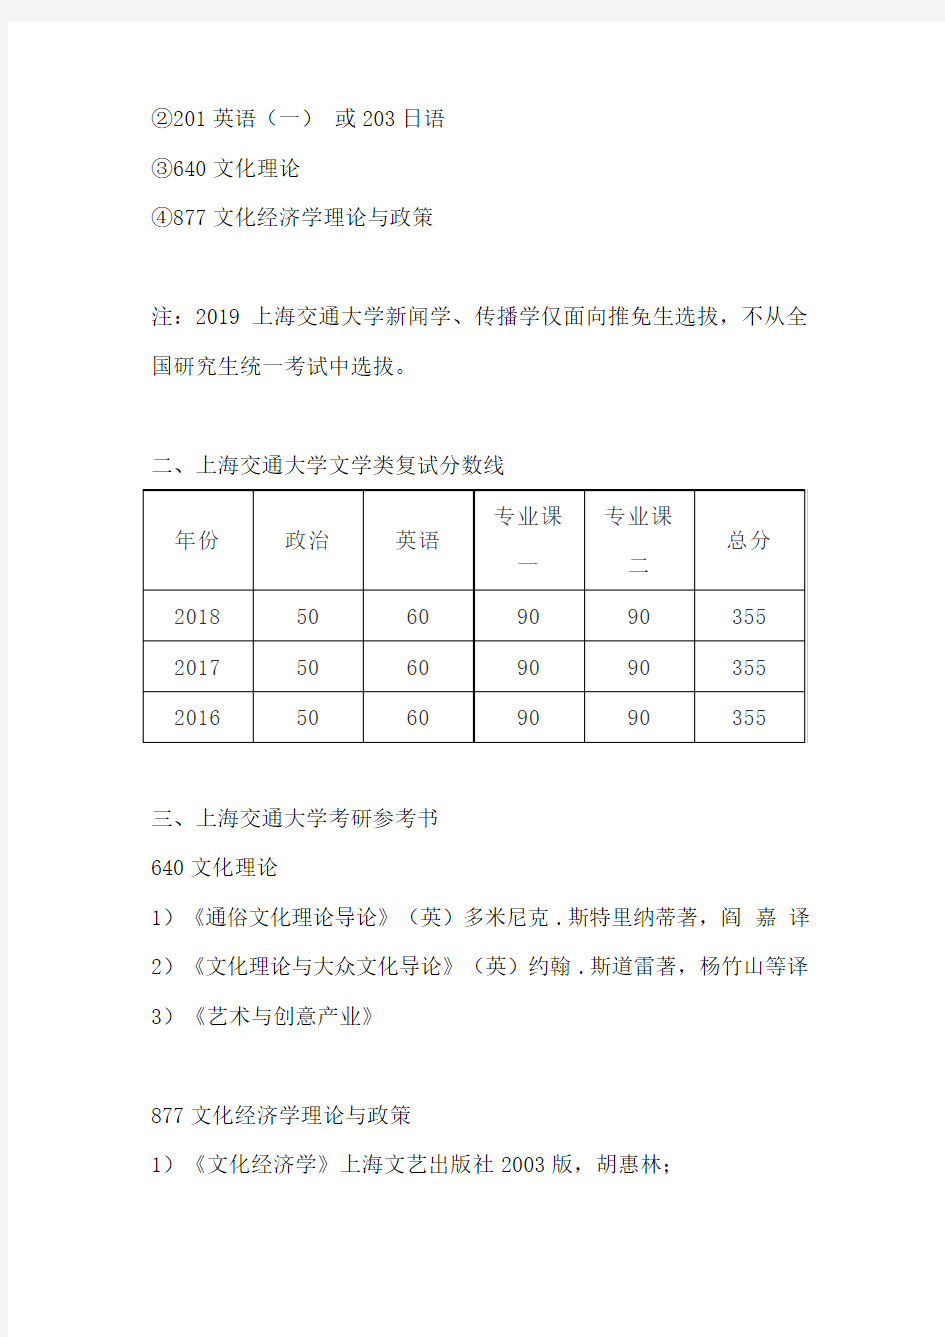 【初试】2020年上海交通大学新闻传播学考研考试科目、招生人数、参考书目、复试分数、录取人数